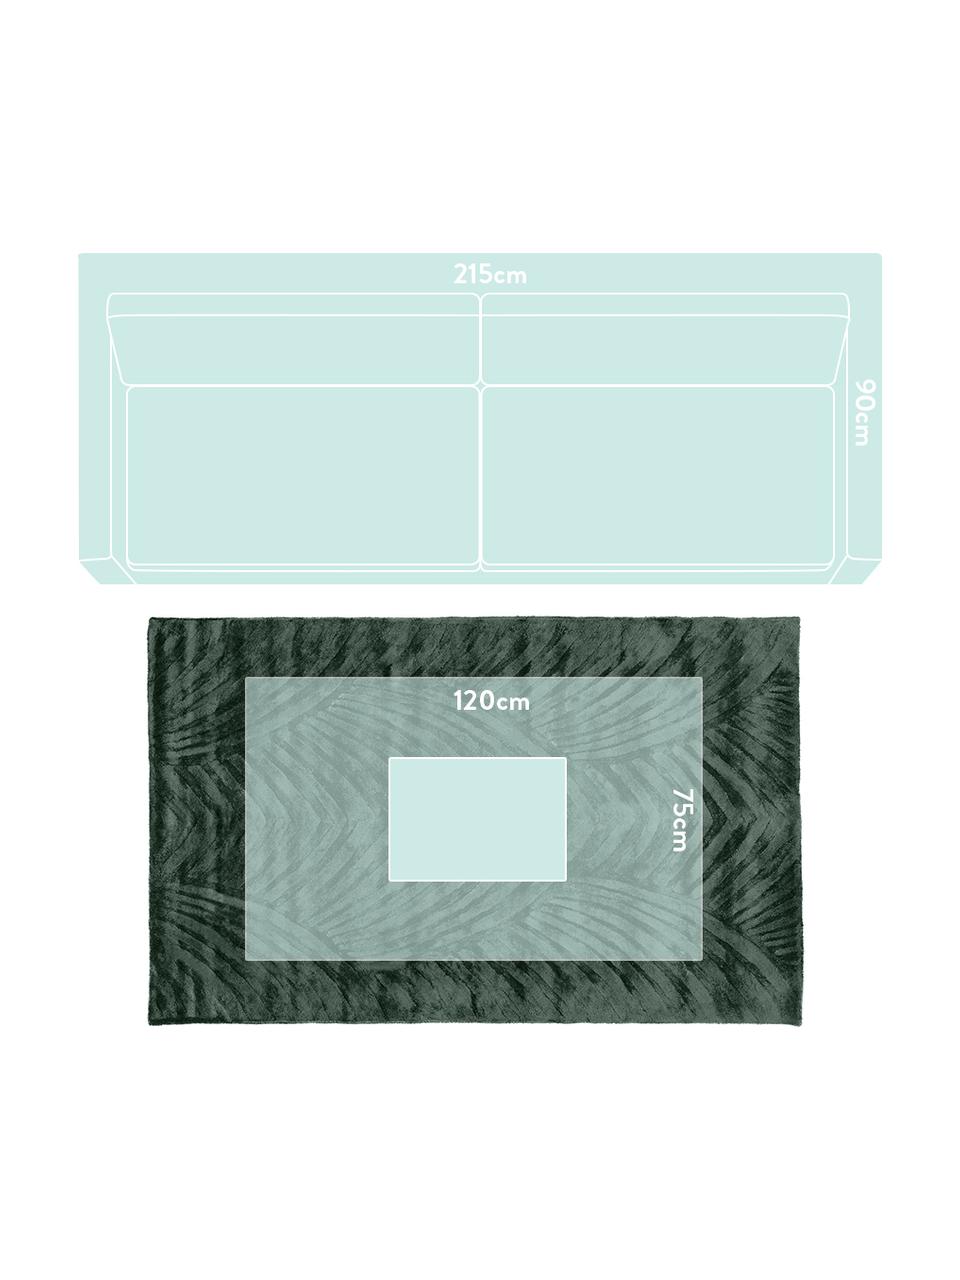 Tappeto in viscosa verde scuro taftato a mano con motivo Bloom, Retro: 100% cotone, Verde scuro, Larg. 120 x Lung. 180 cm (taglia S)